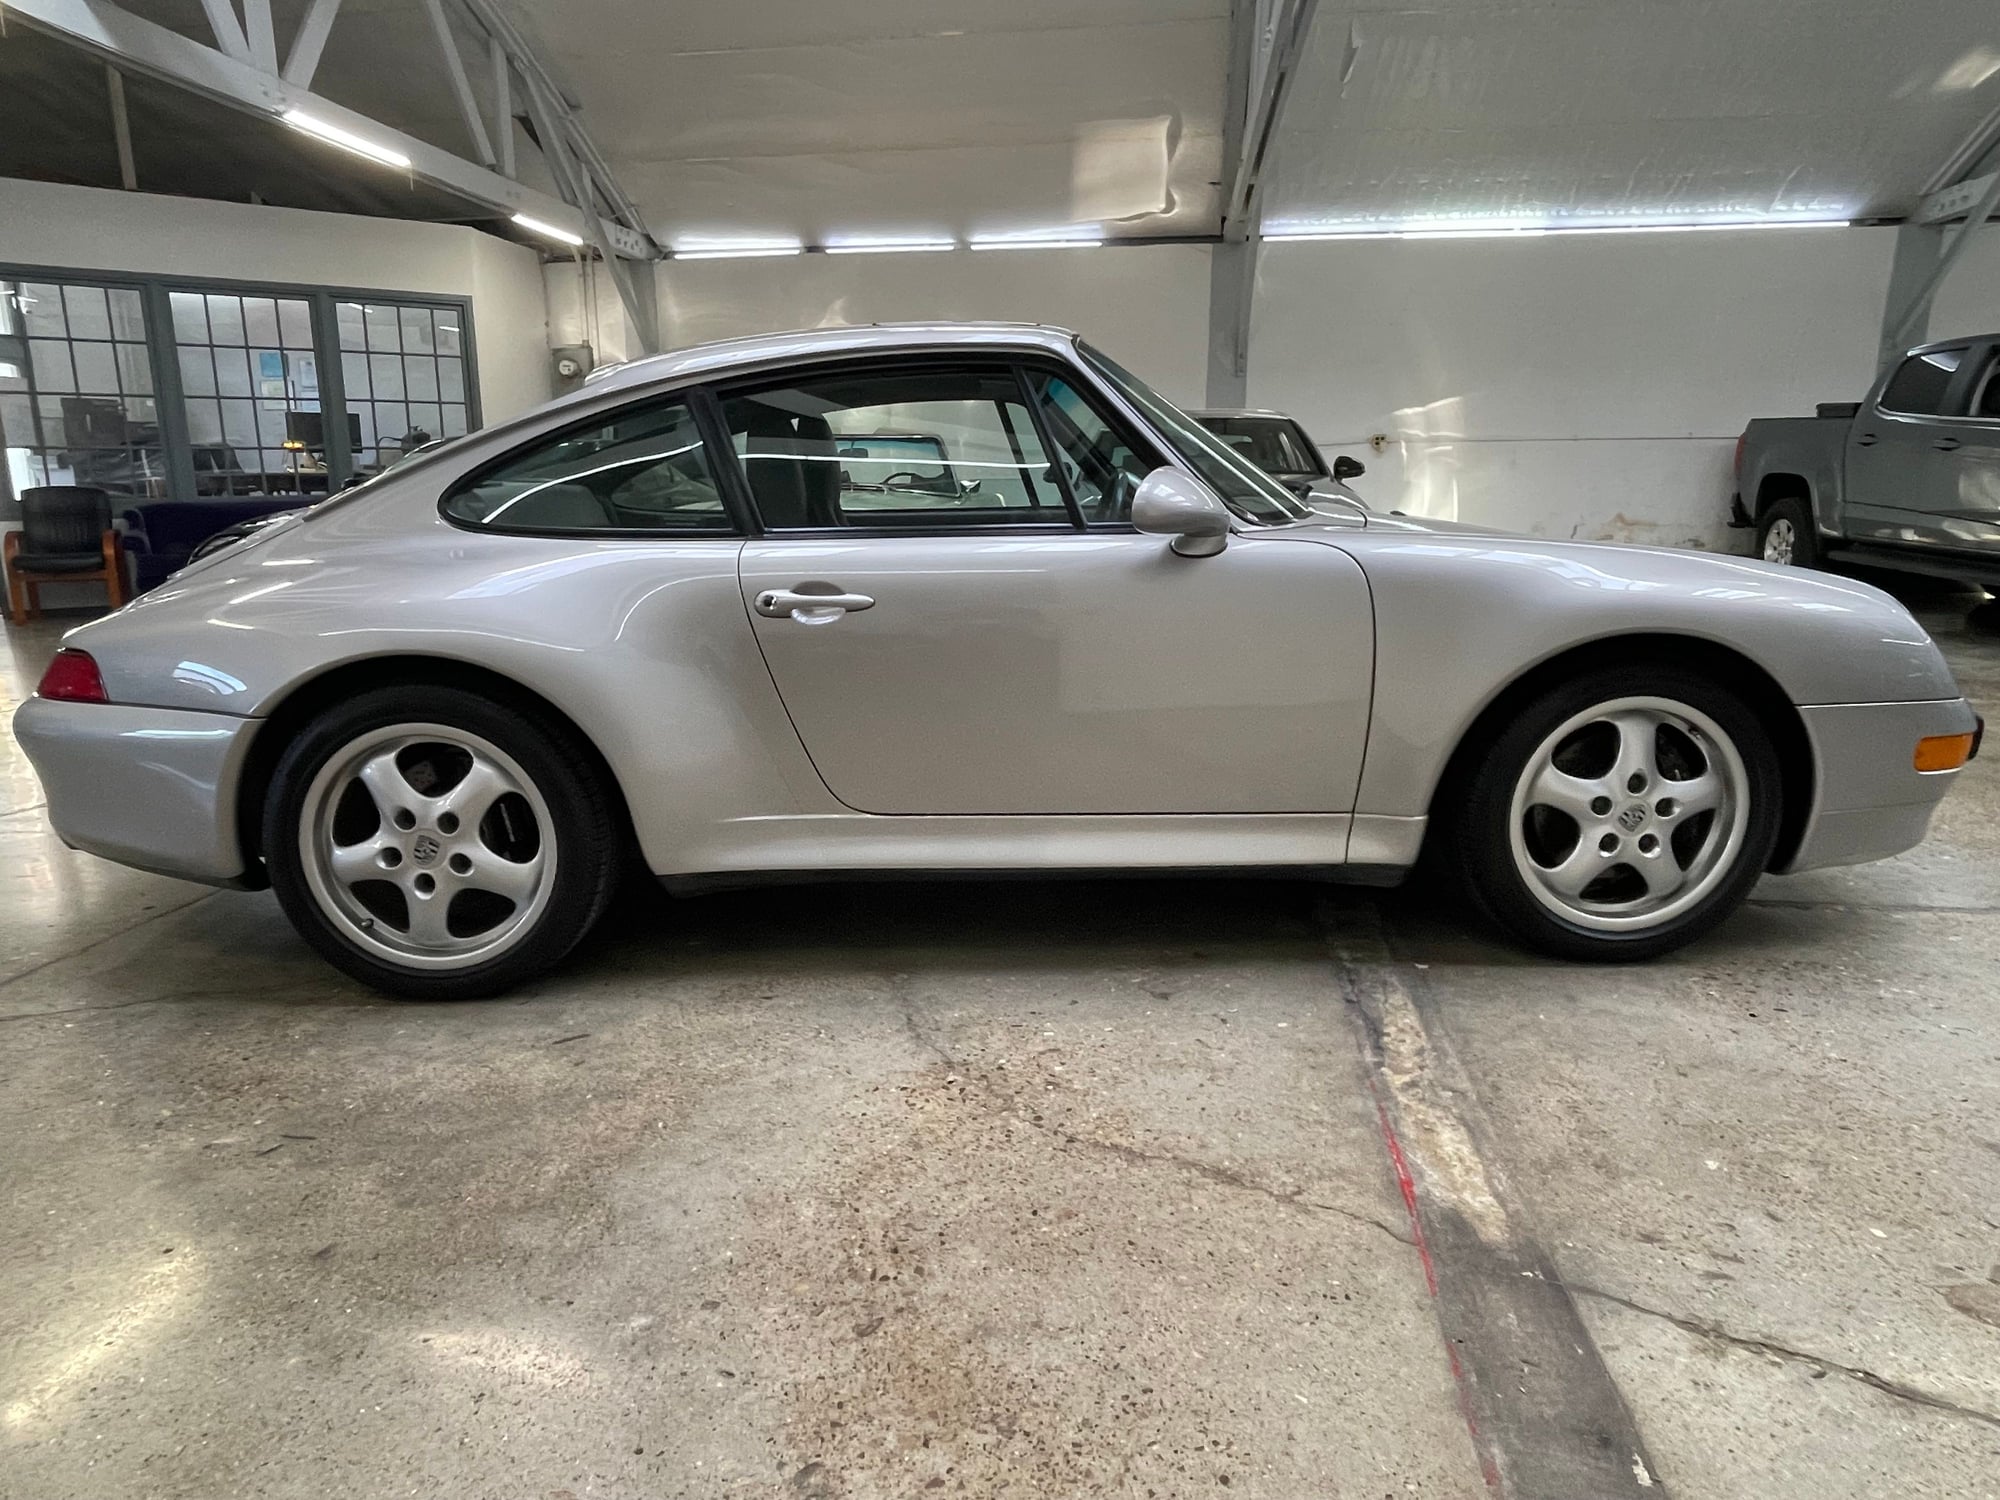 1997 Porsche 911 - 1997 Porsche 993 C2S - Used - VIN WP0AA2994VS322926 - 48,000 Miles - 6 cyl - 2WD - Manual - Coupe - Silver - Santa Barbara, CA 93103, United States